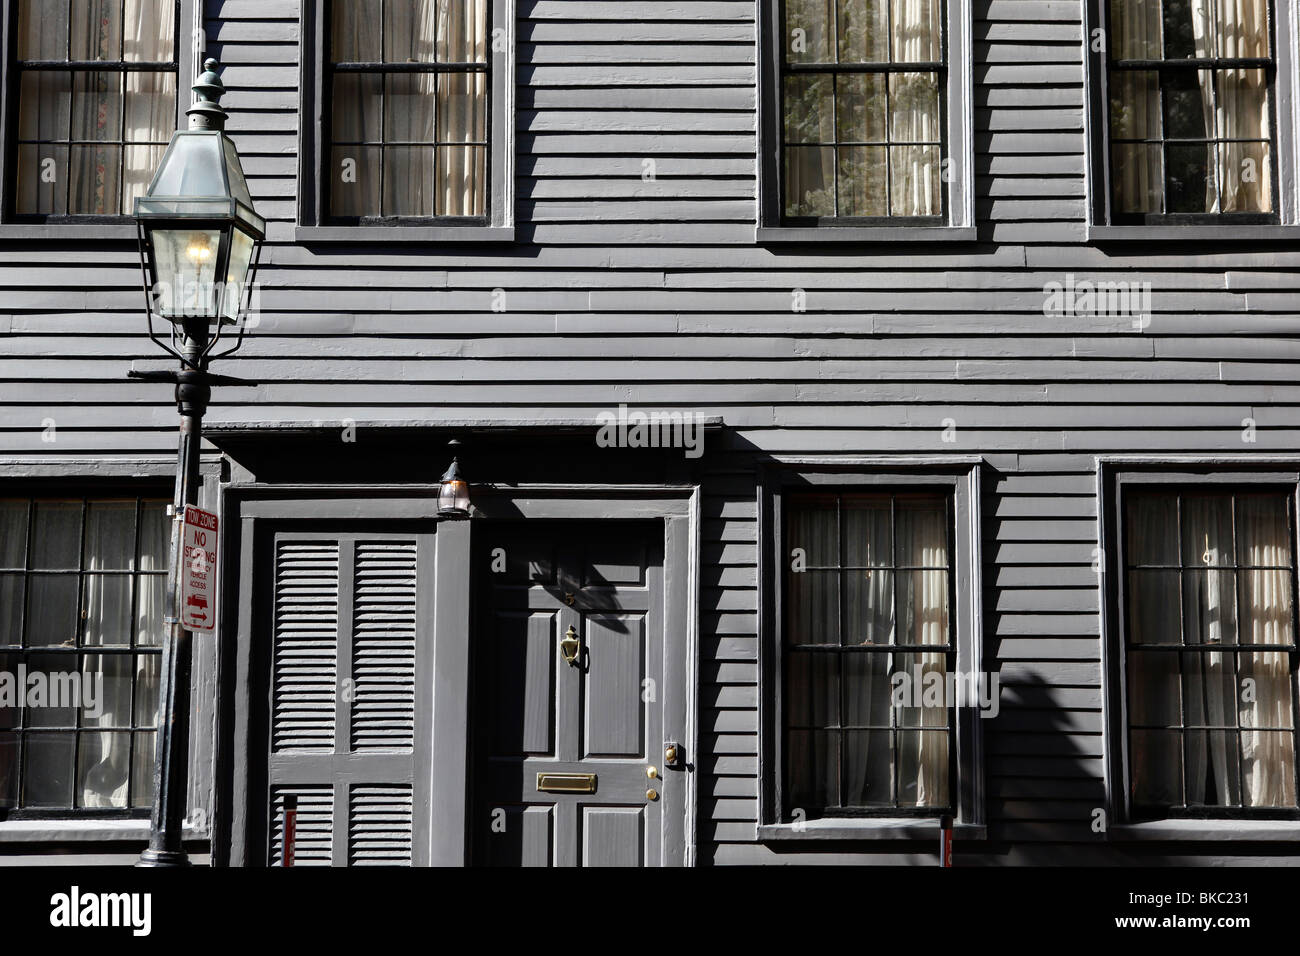 Wooden clapboard siding on a house on Pinckney Street, Beacon Hill, Boston, Massachusetts Stock Photo